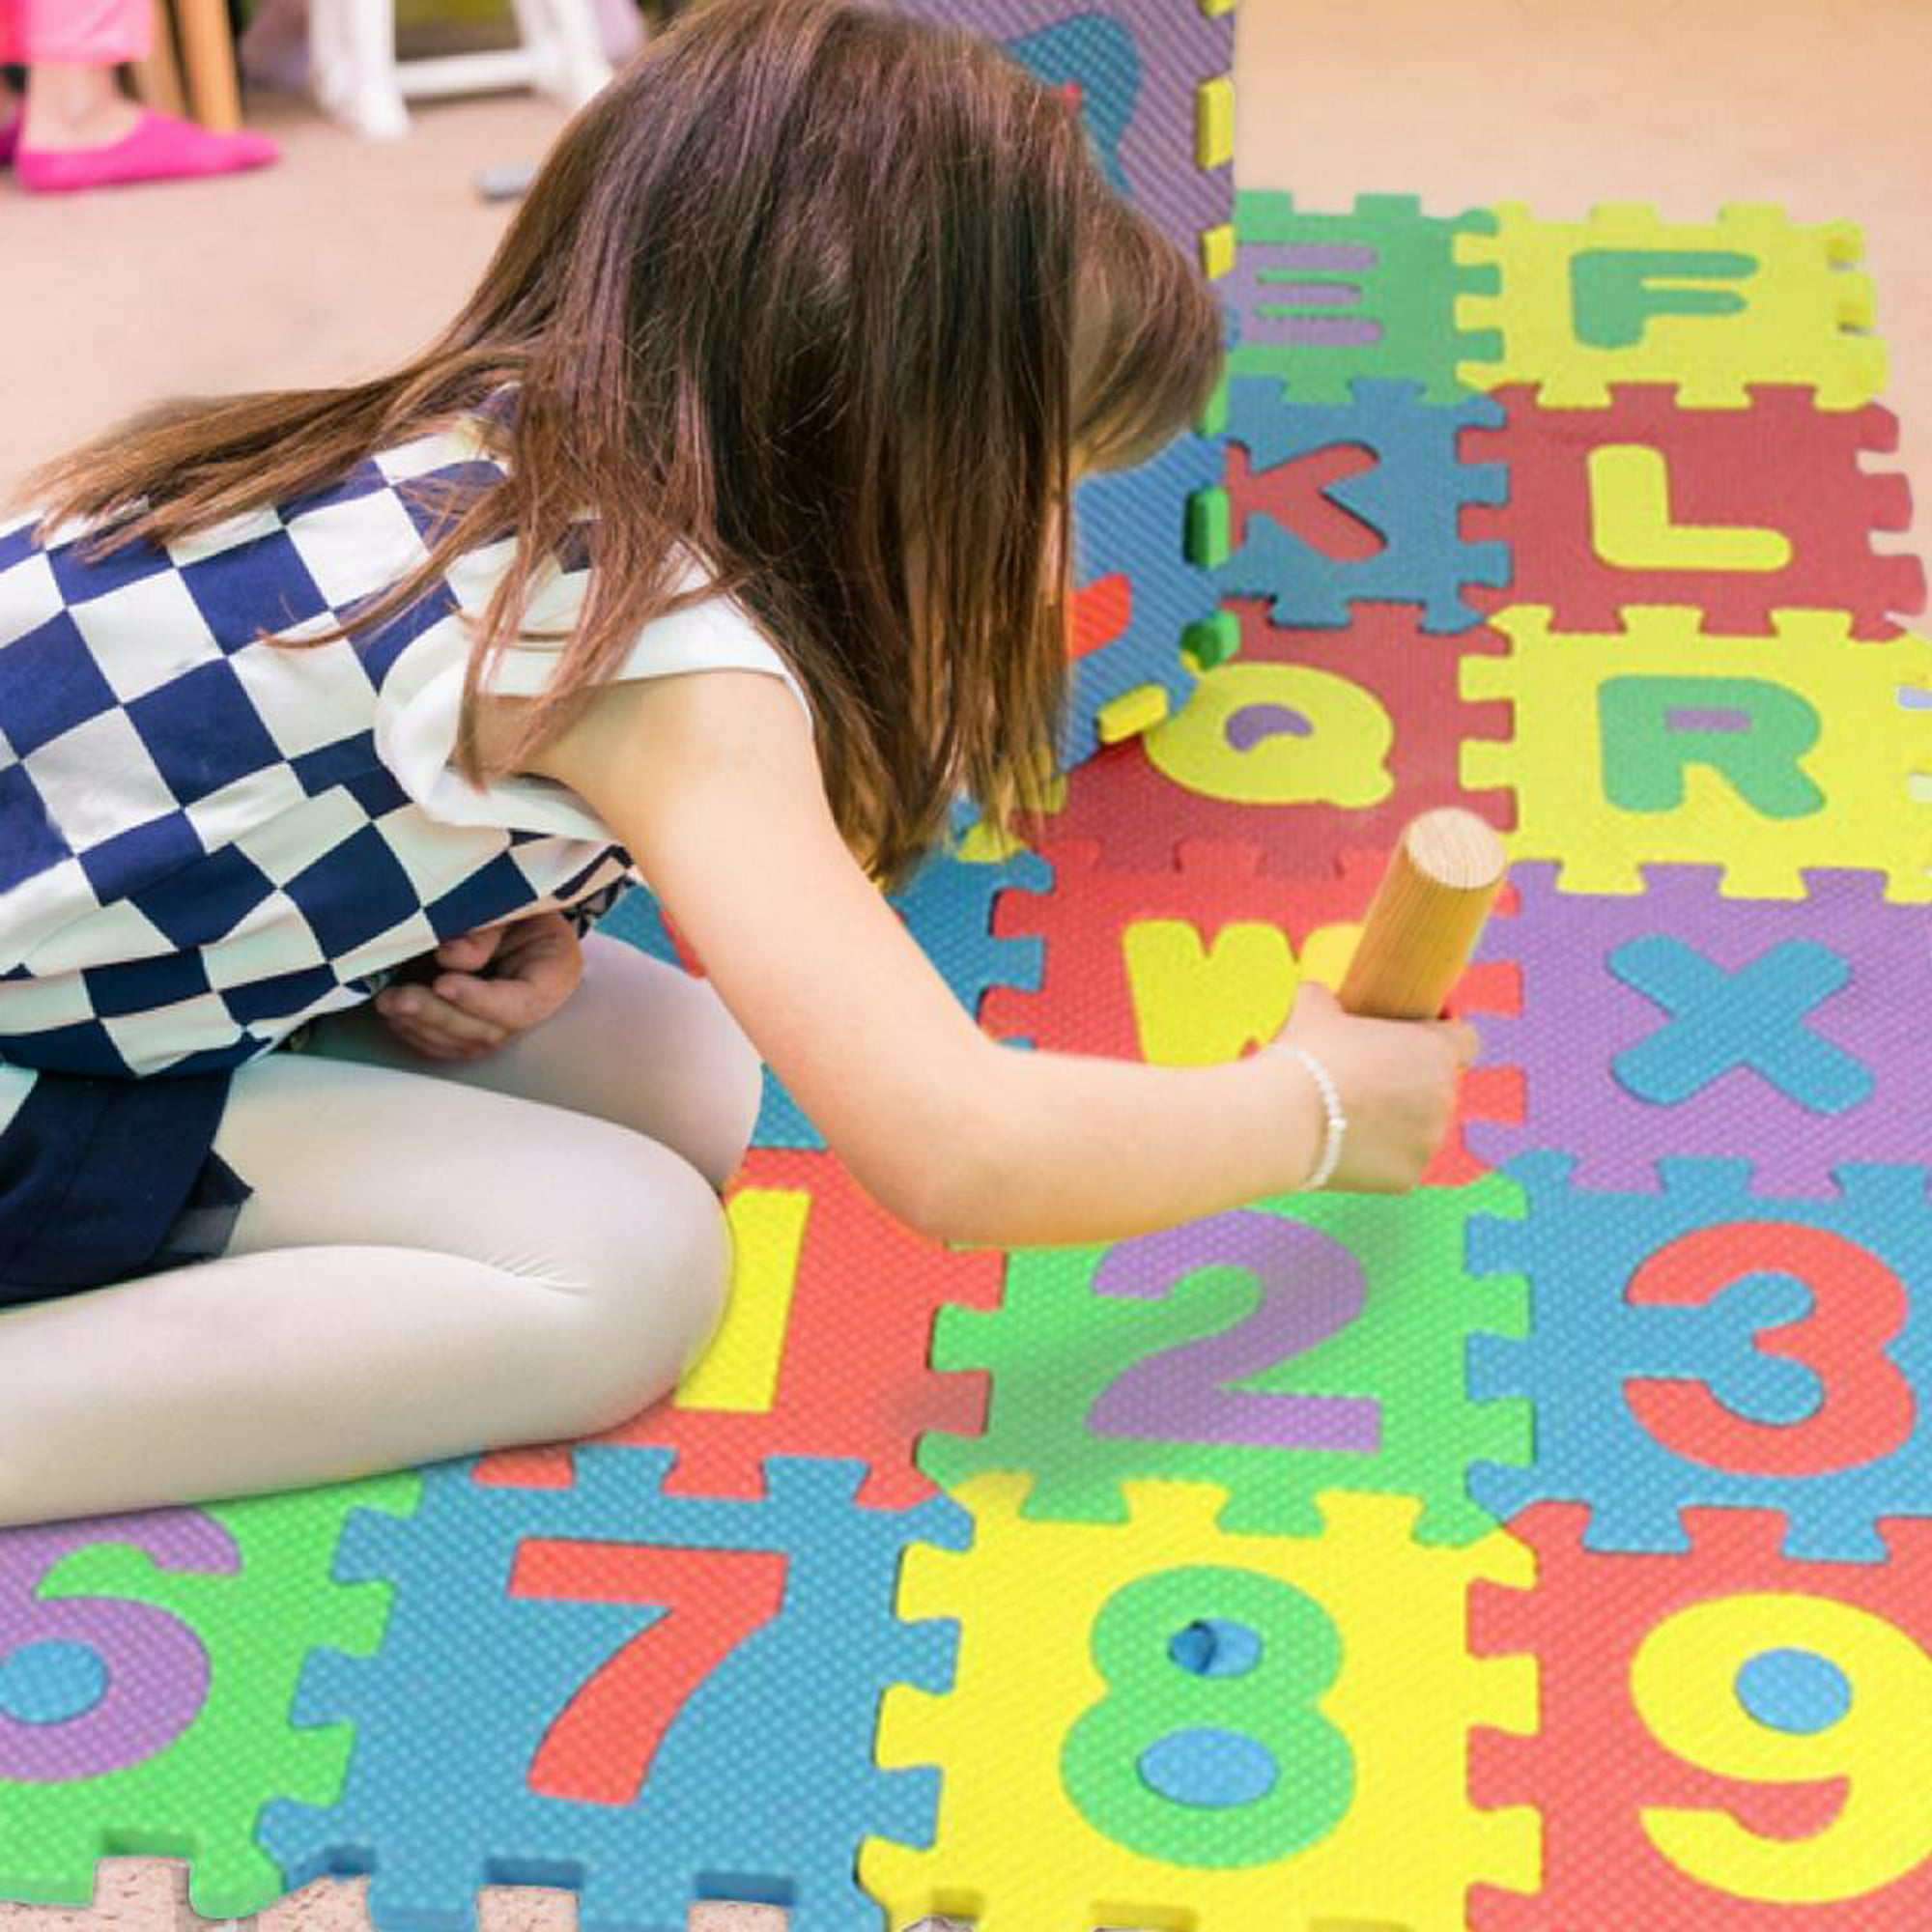 Alfombra de Gateo de Espuma , Mejore el Interés de su Bebé en A Números e  Inglés, a los los Colores Zulema Puzzle Play Foam para niños